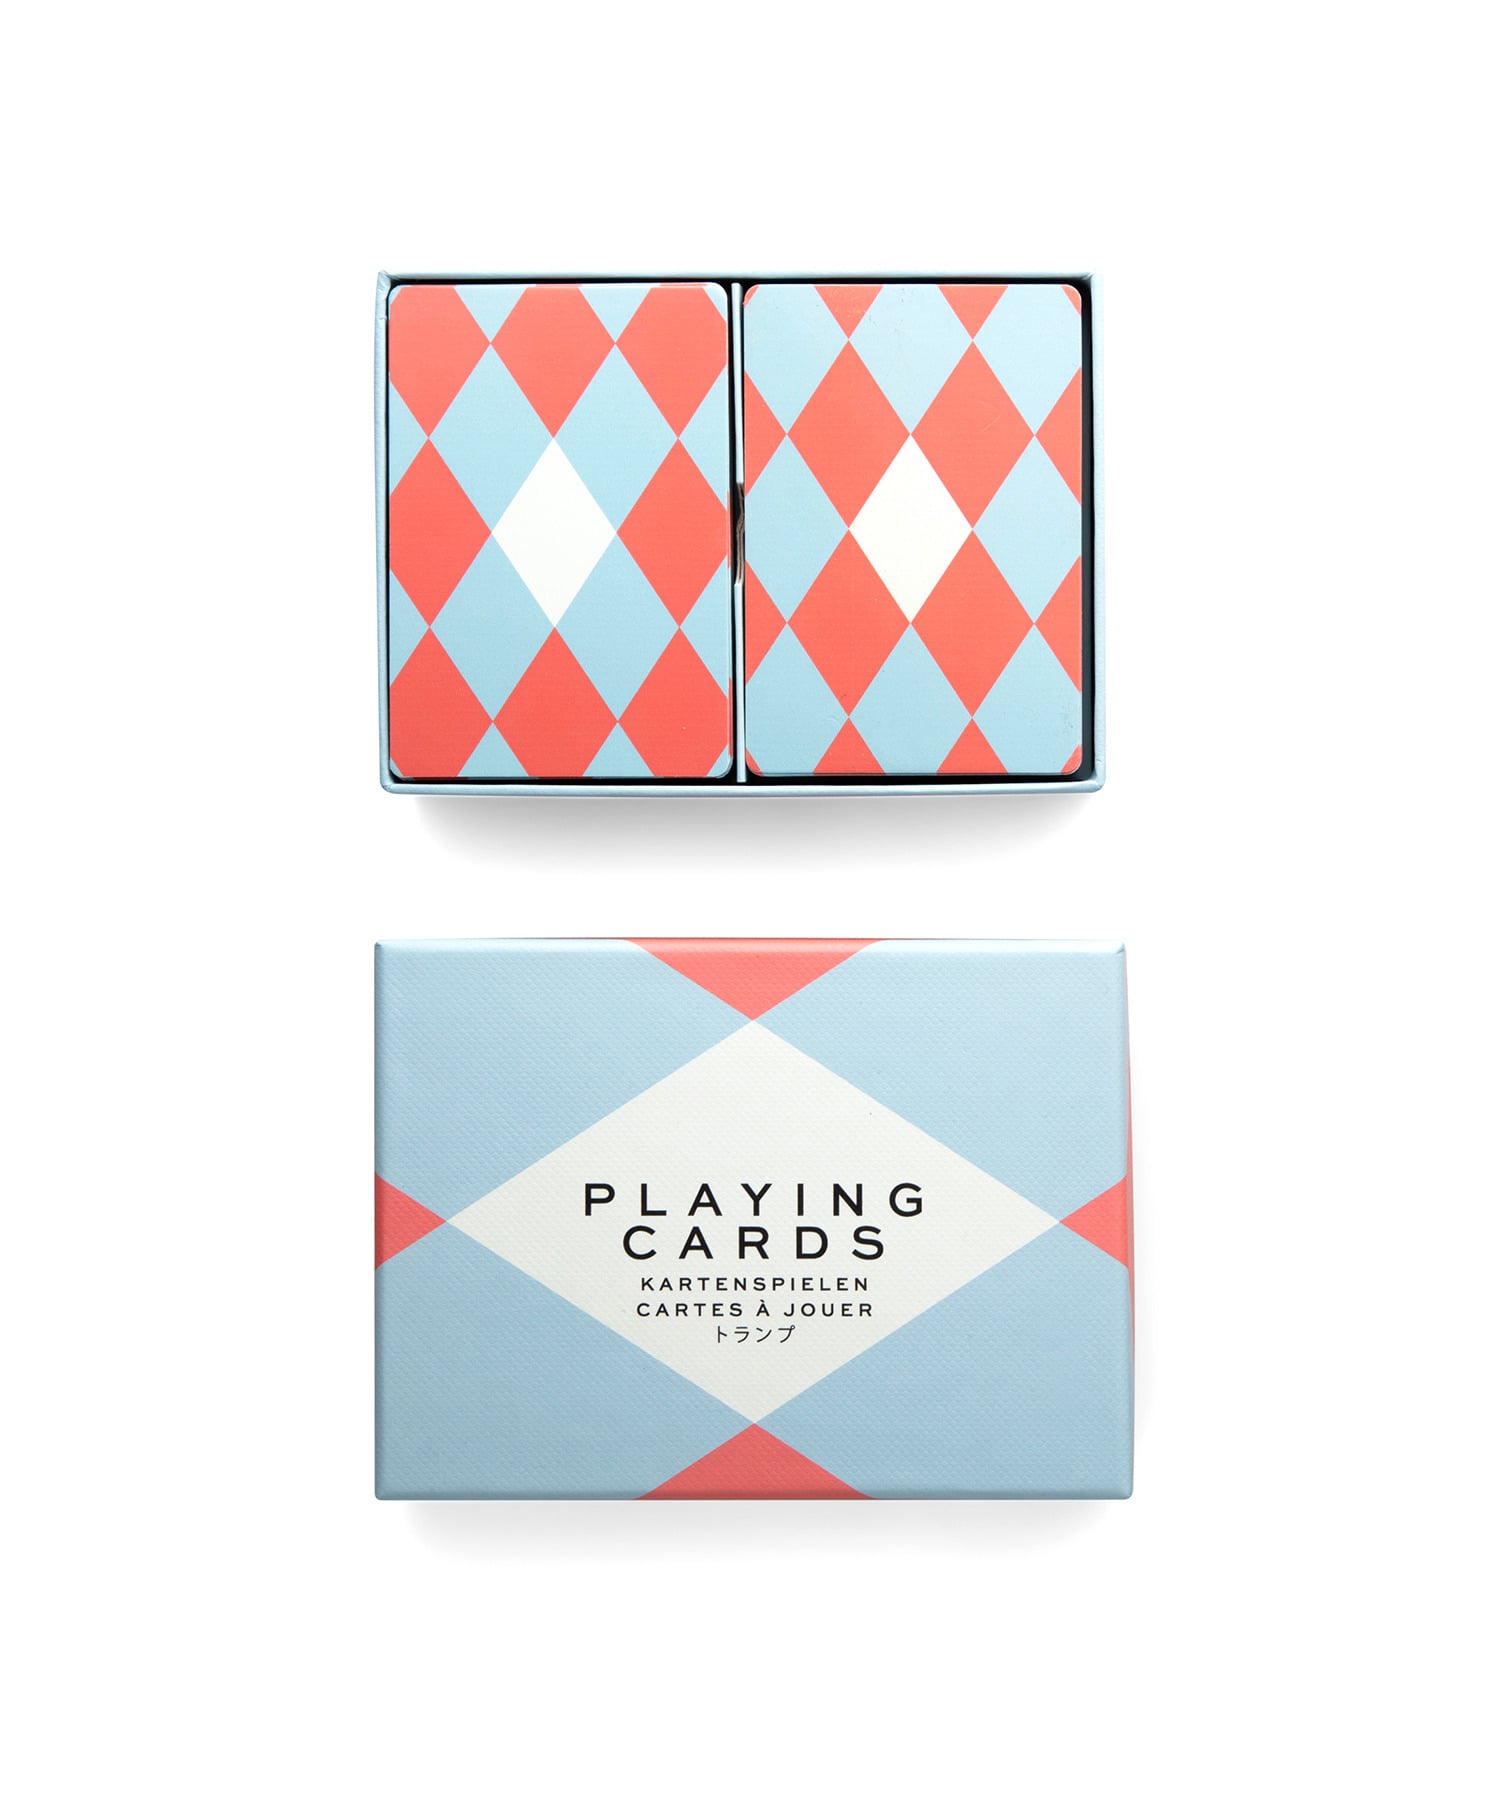 "Playing Cards" トランプカード 詳細画像 マルチカラー 1